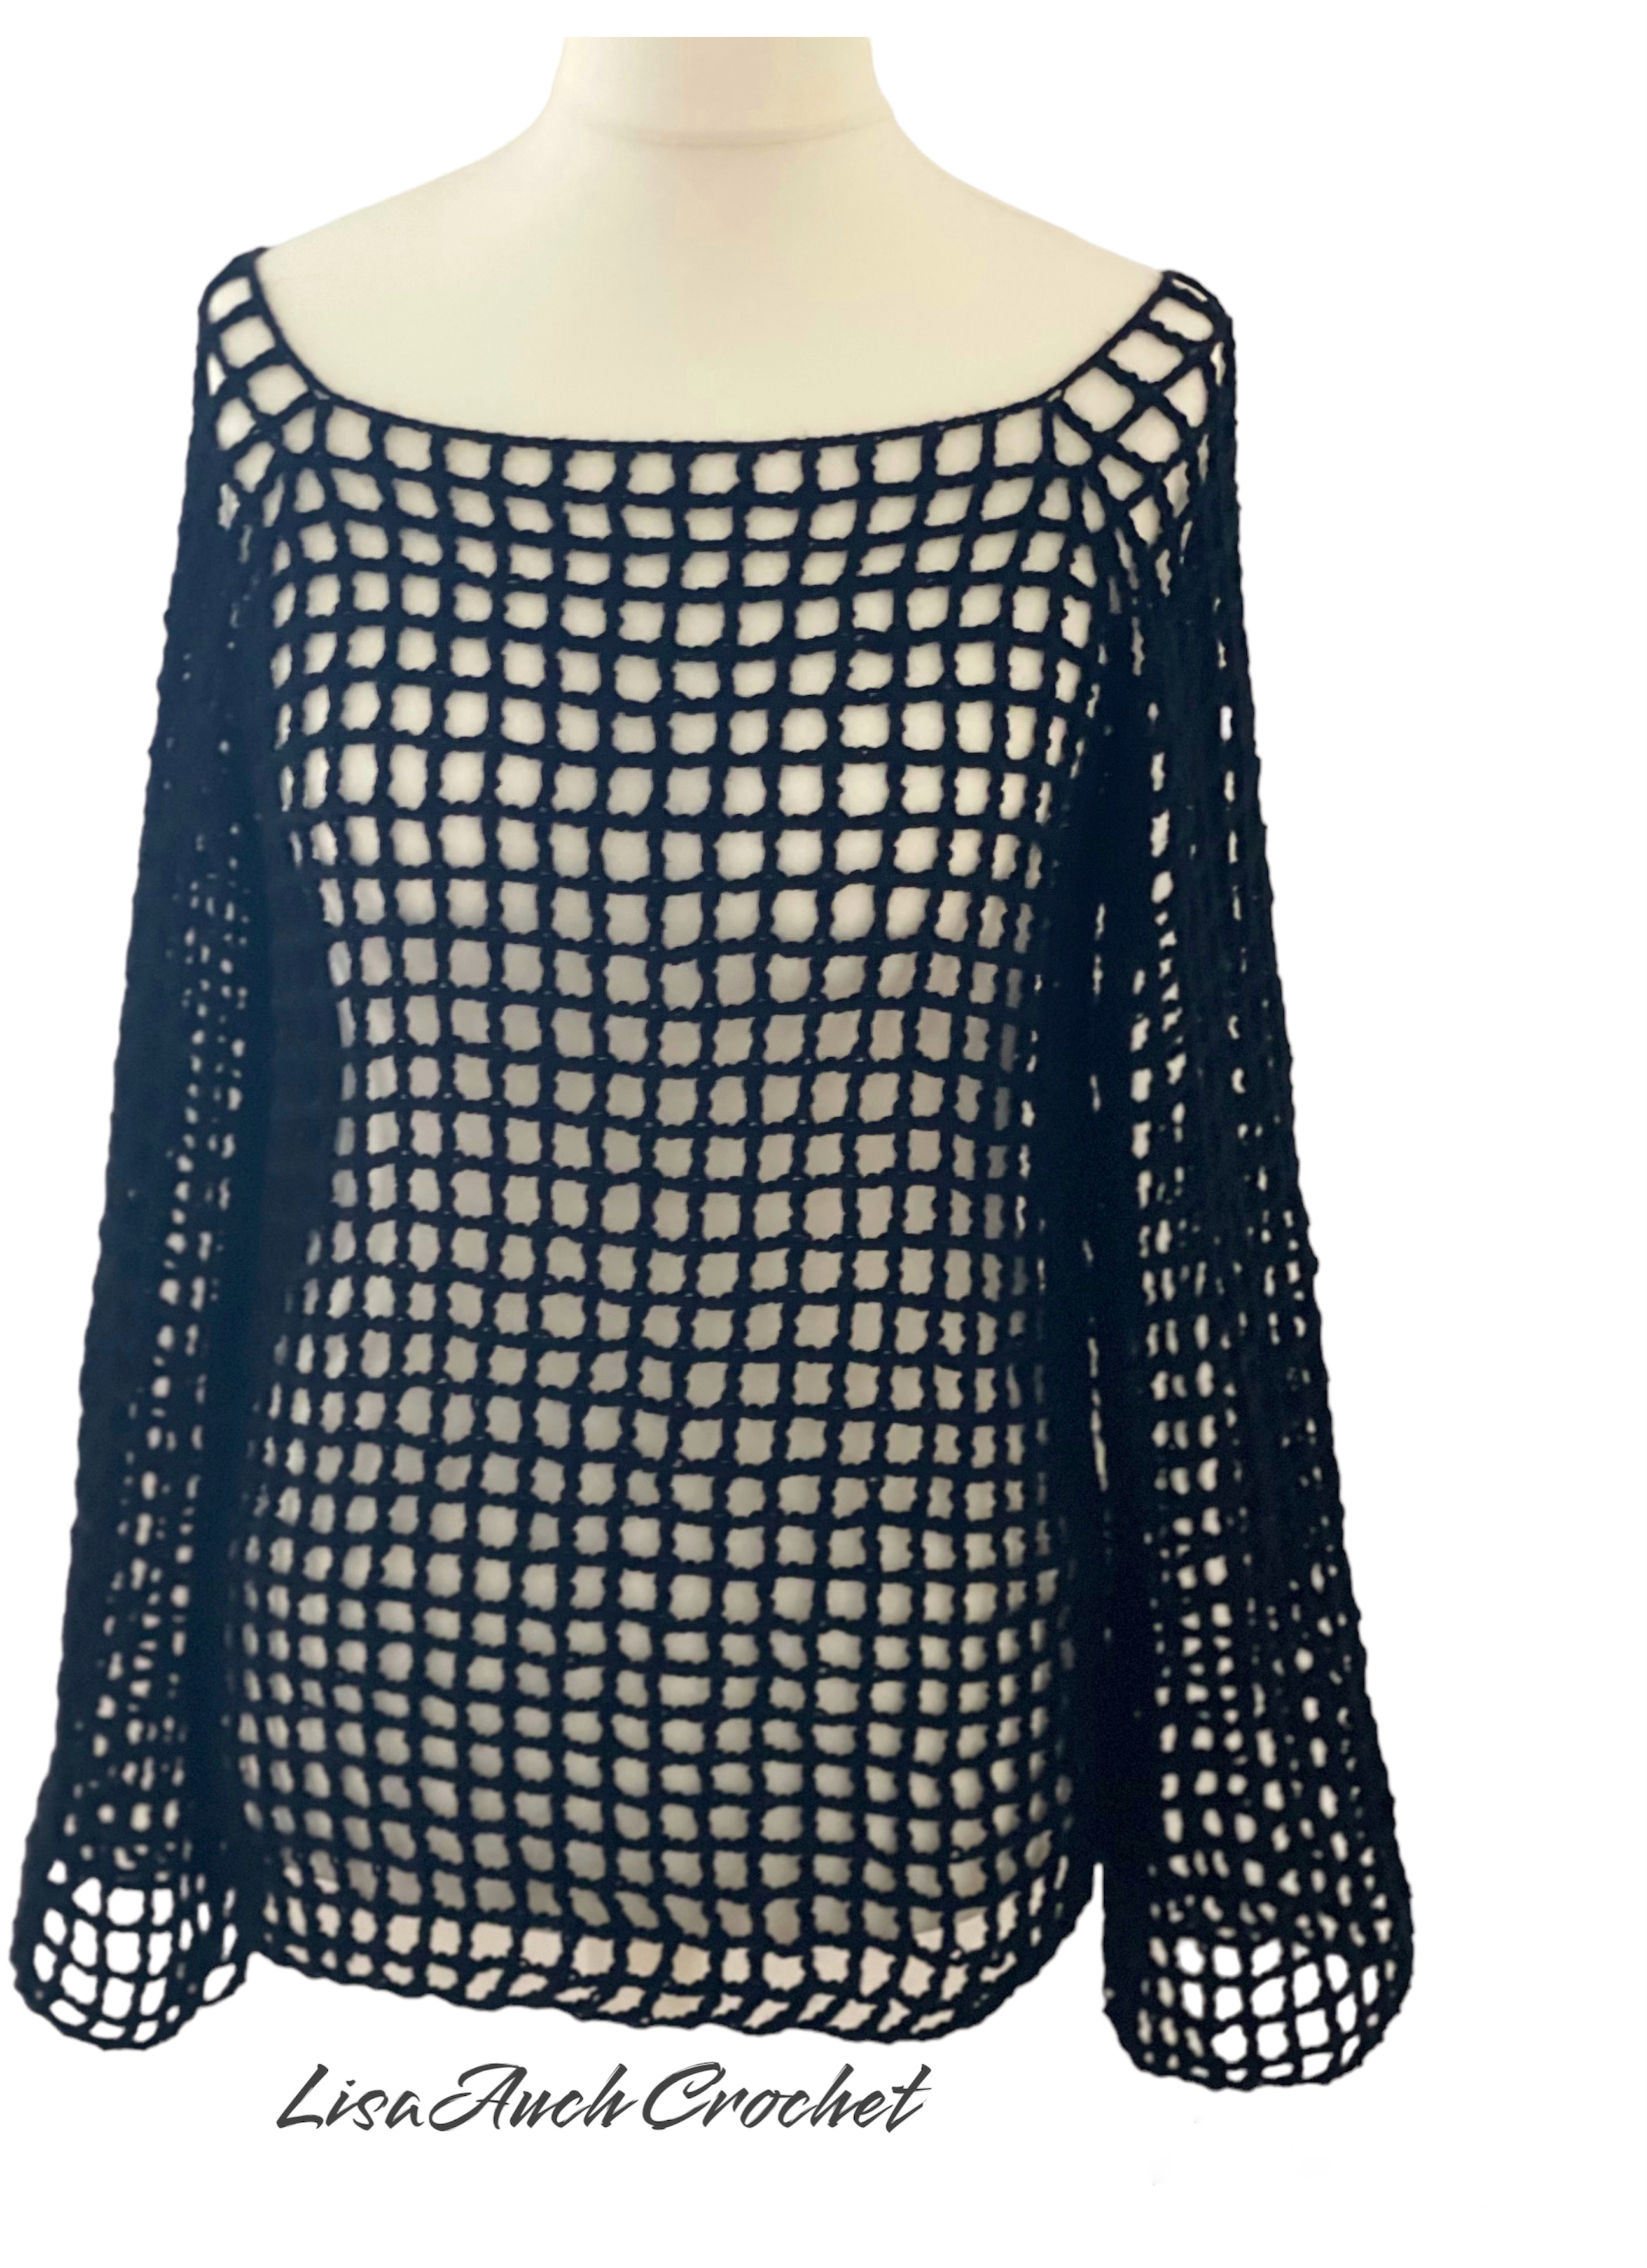 Women Crochet Crop Top Mesh Knit Blouse Shirt Cap Sleeve Crochet